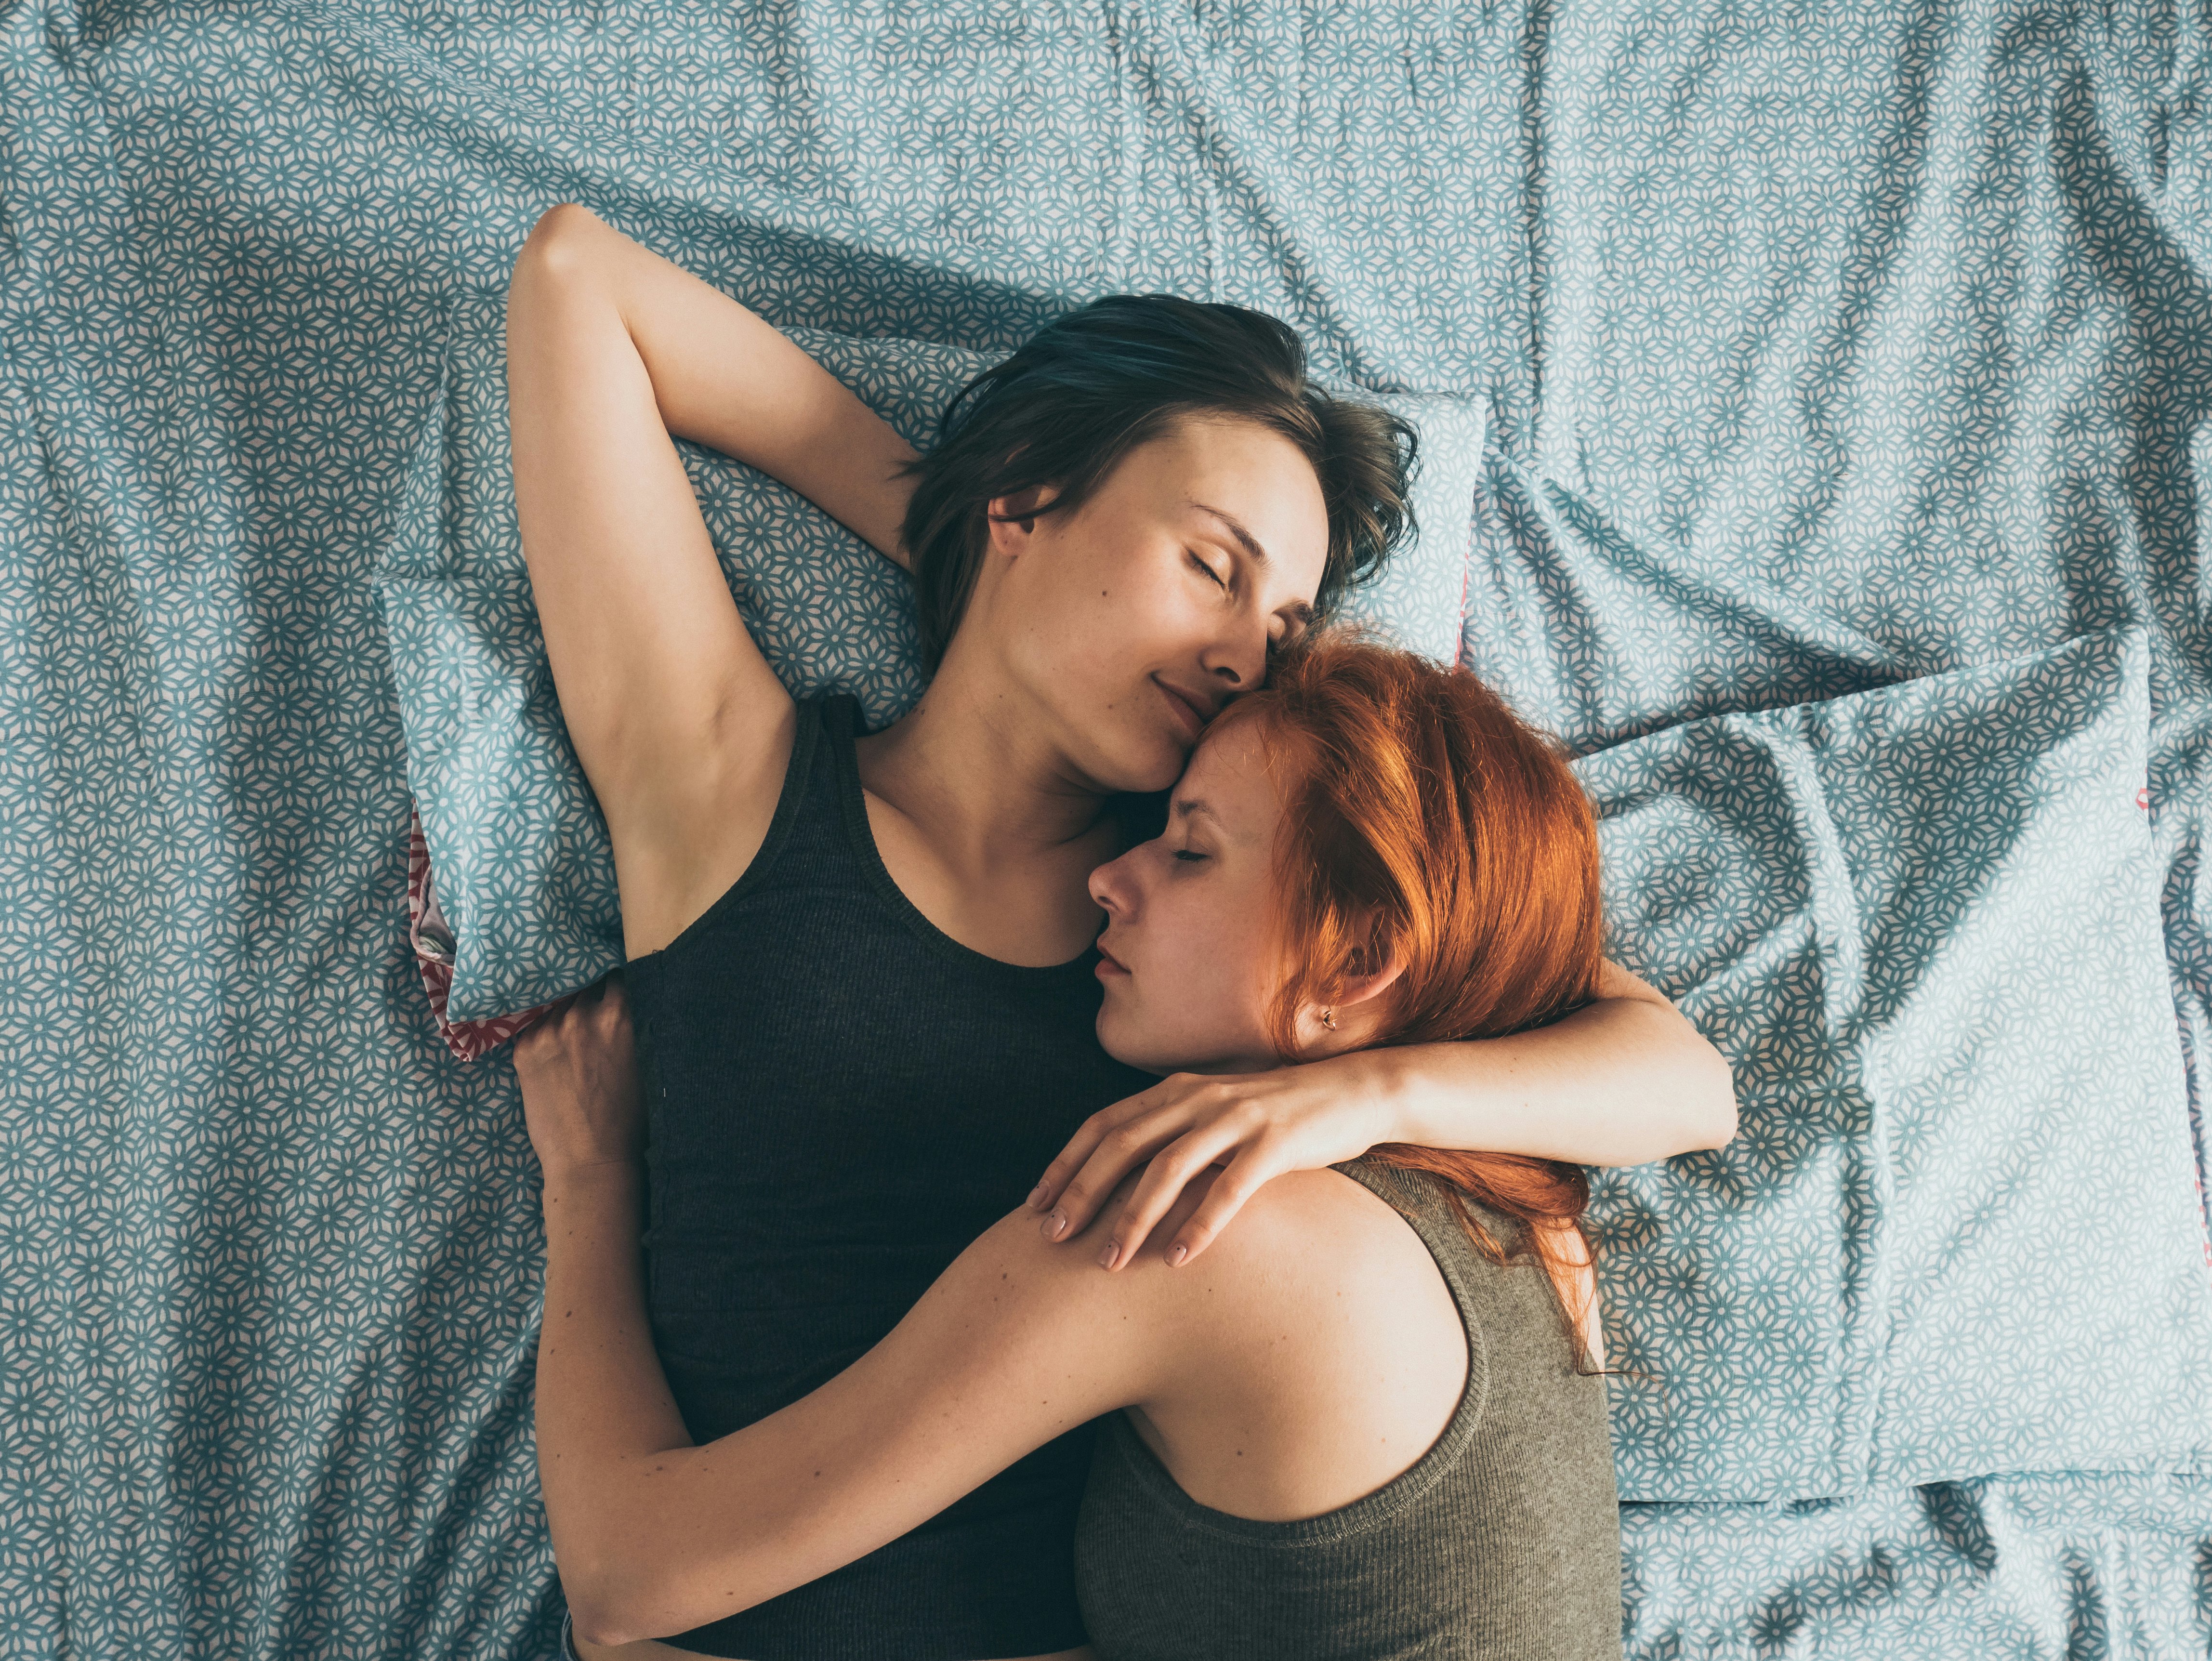 Лесбиянки на кровати играют друг с другом и доводят свои тела до оргазма